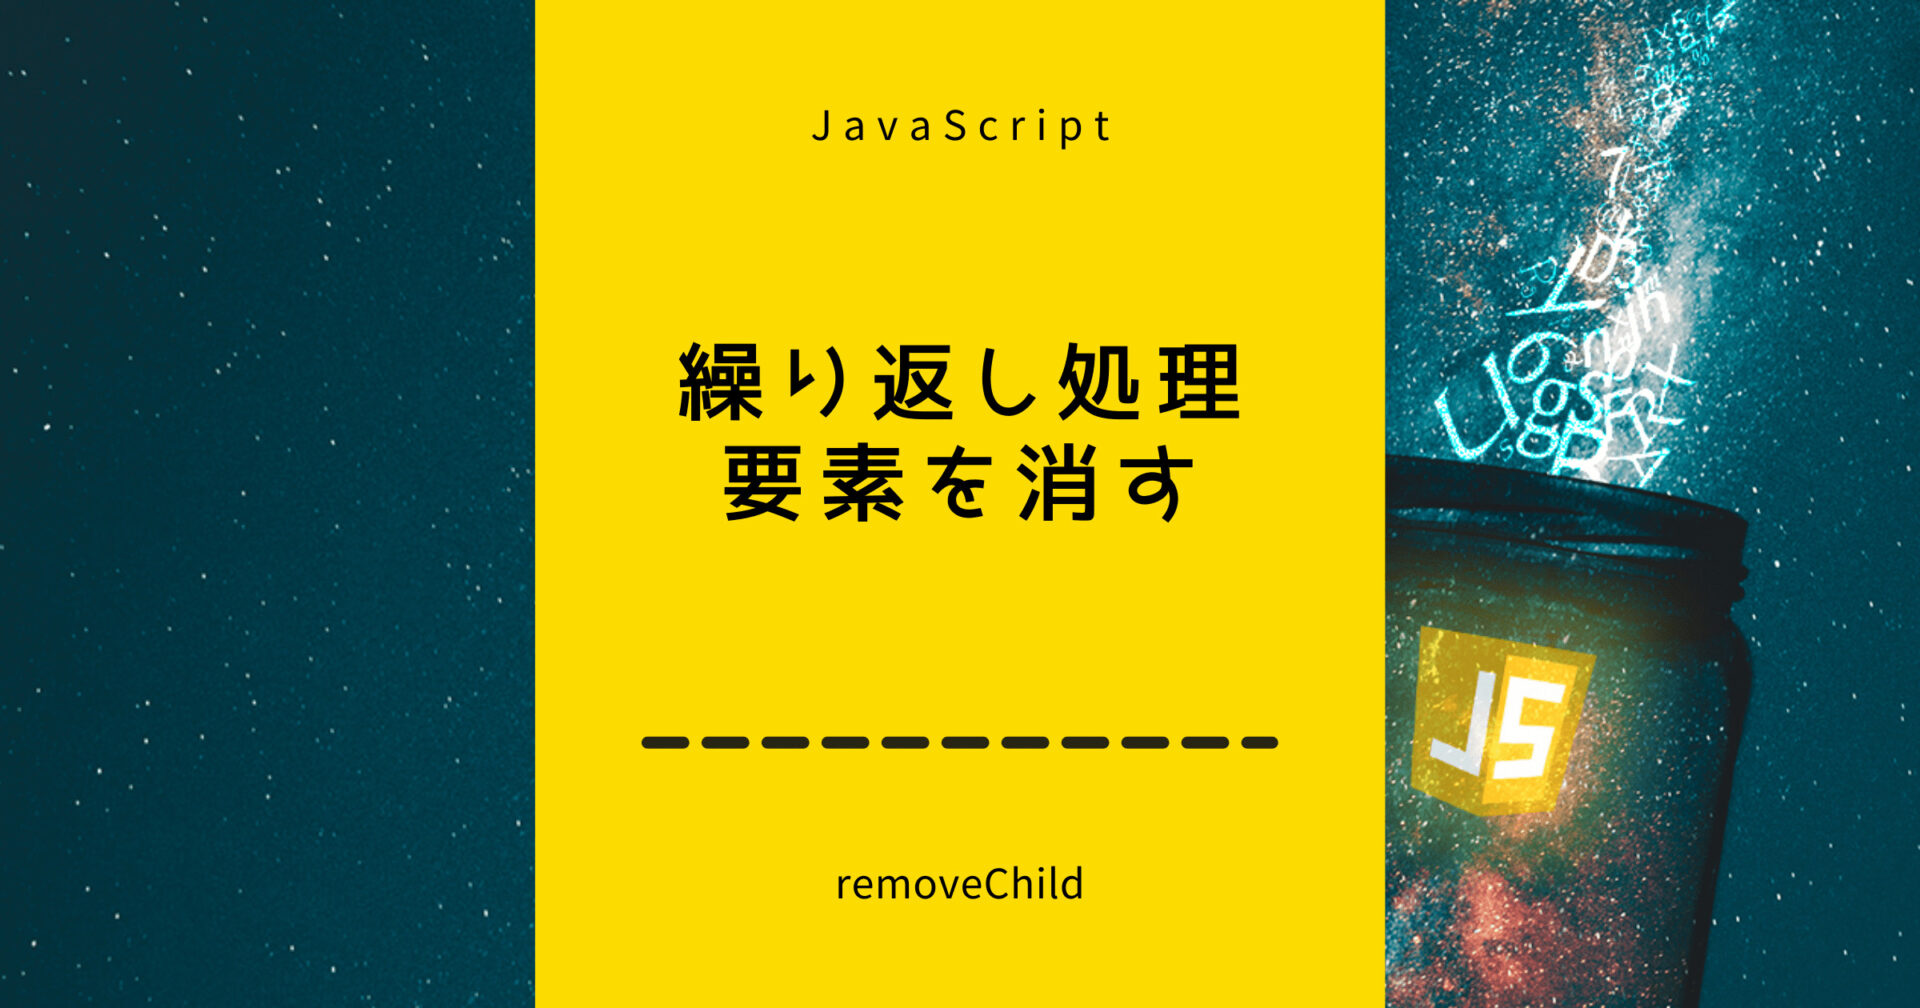 繰り返し処理を使って要素を消すJavaScript